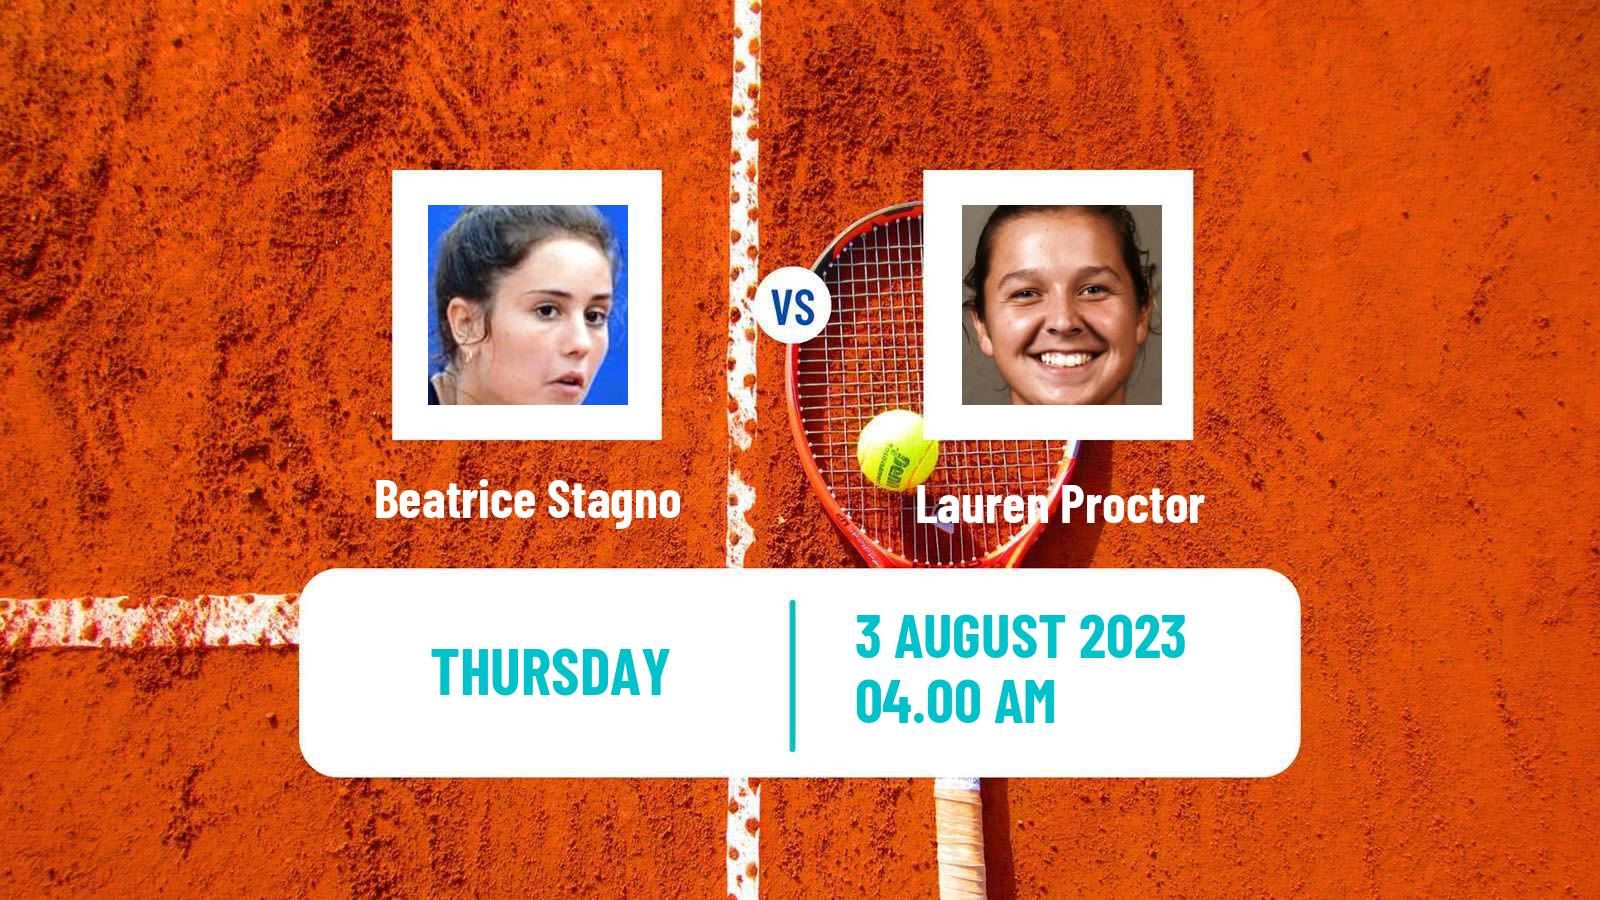 Tennis ITF W15 Monastir 26 Women Beatrice Stagno - Lauren Proctor